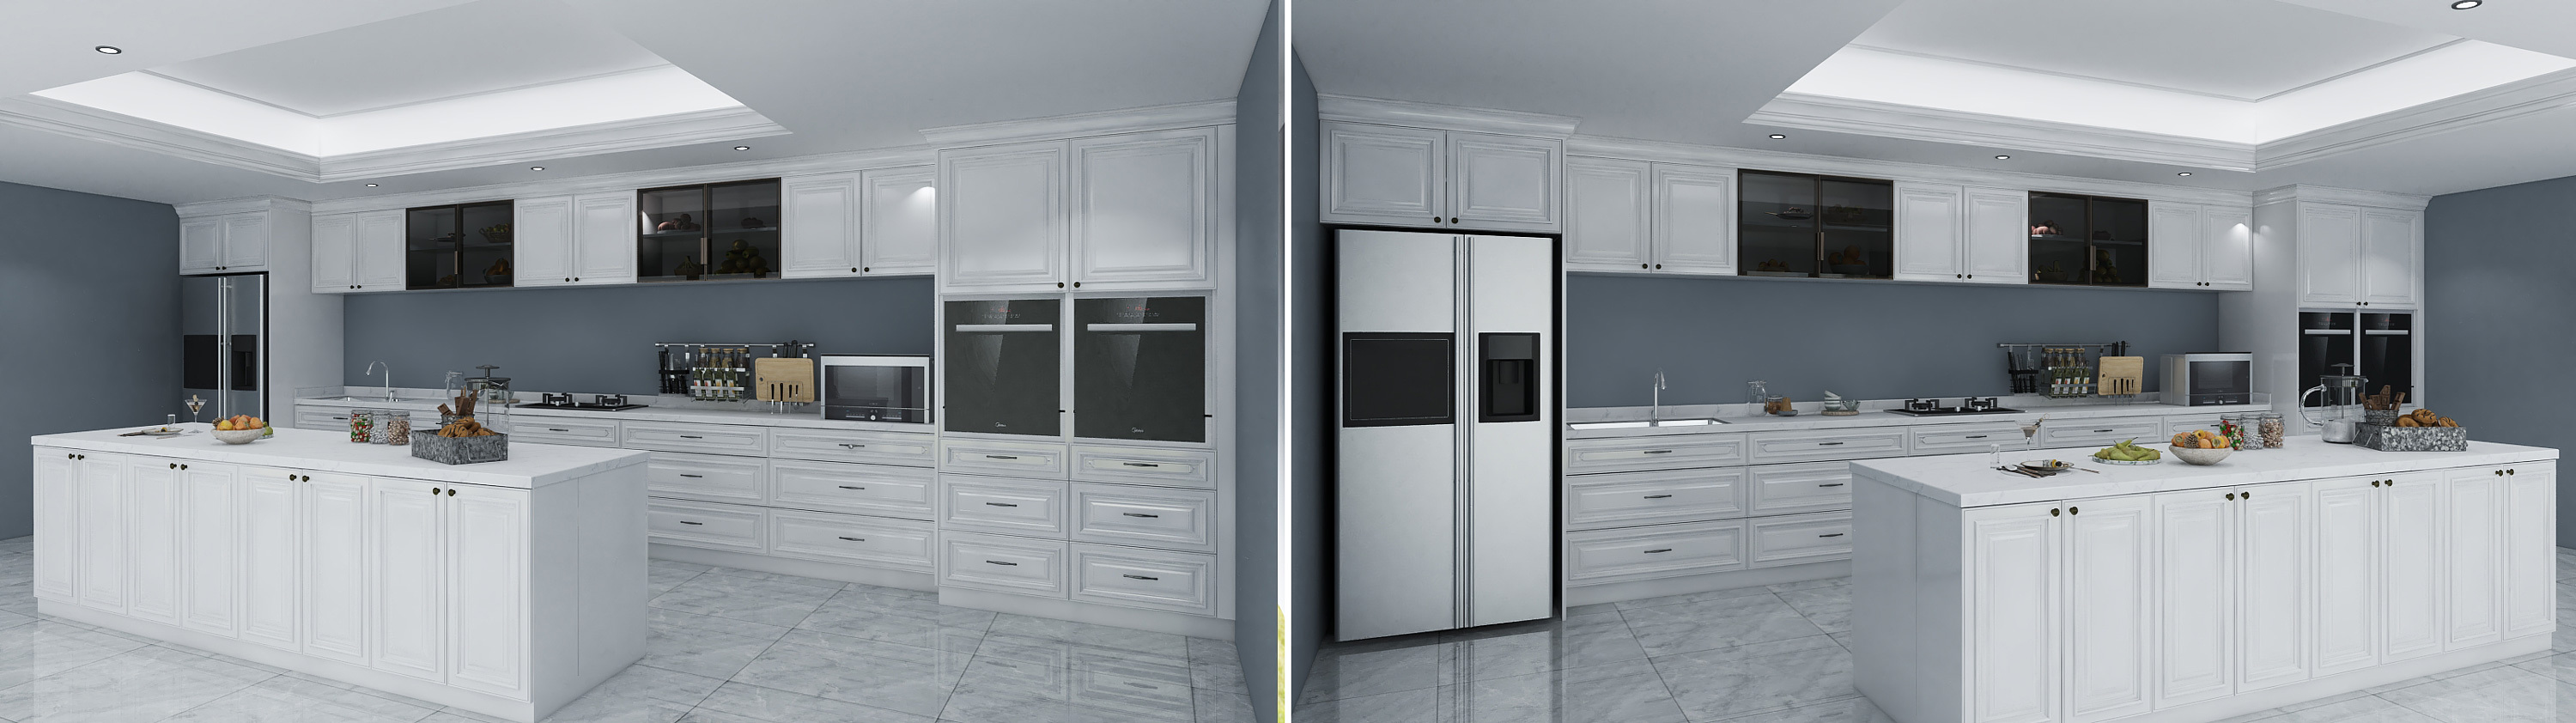 kitchen cabinet design 3D model 2